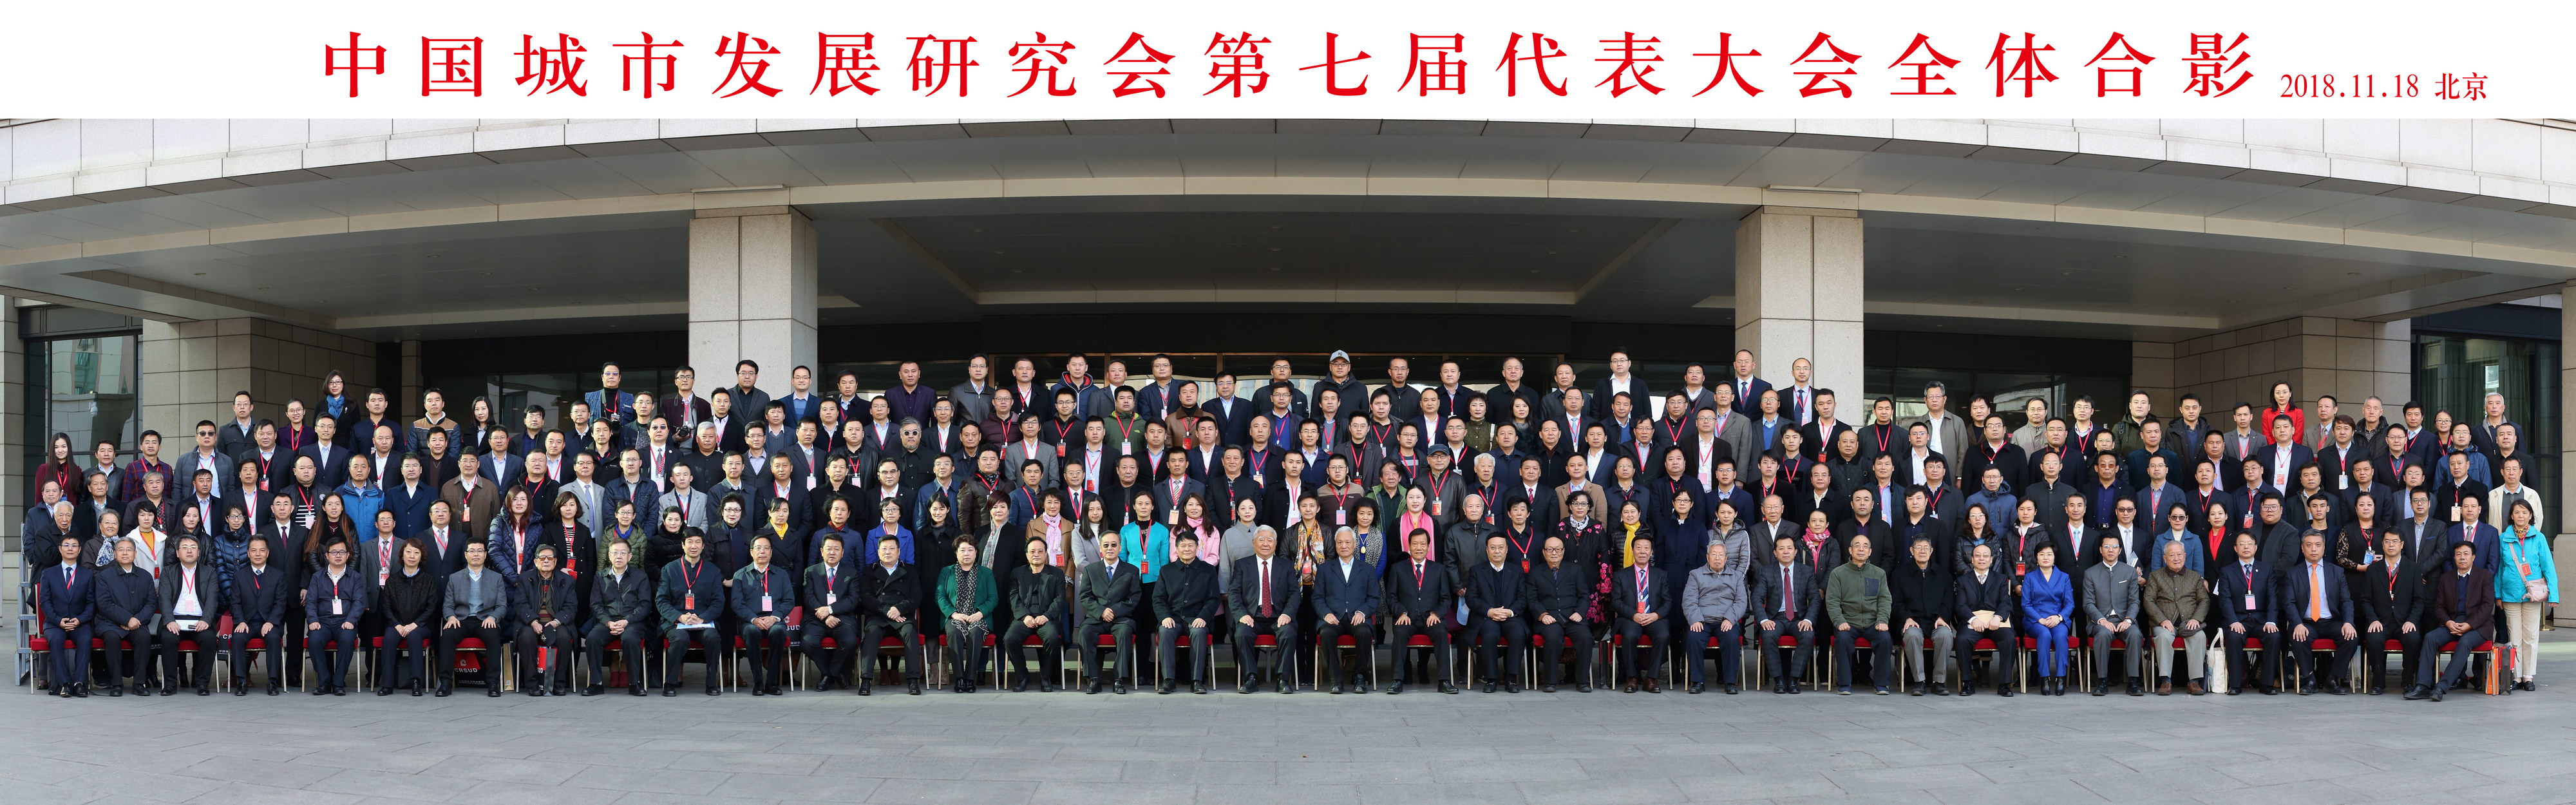 中国城市发展研究会第七届代表大会全体合影